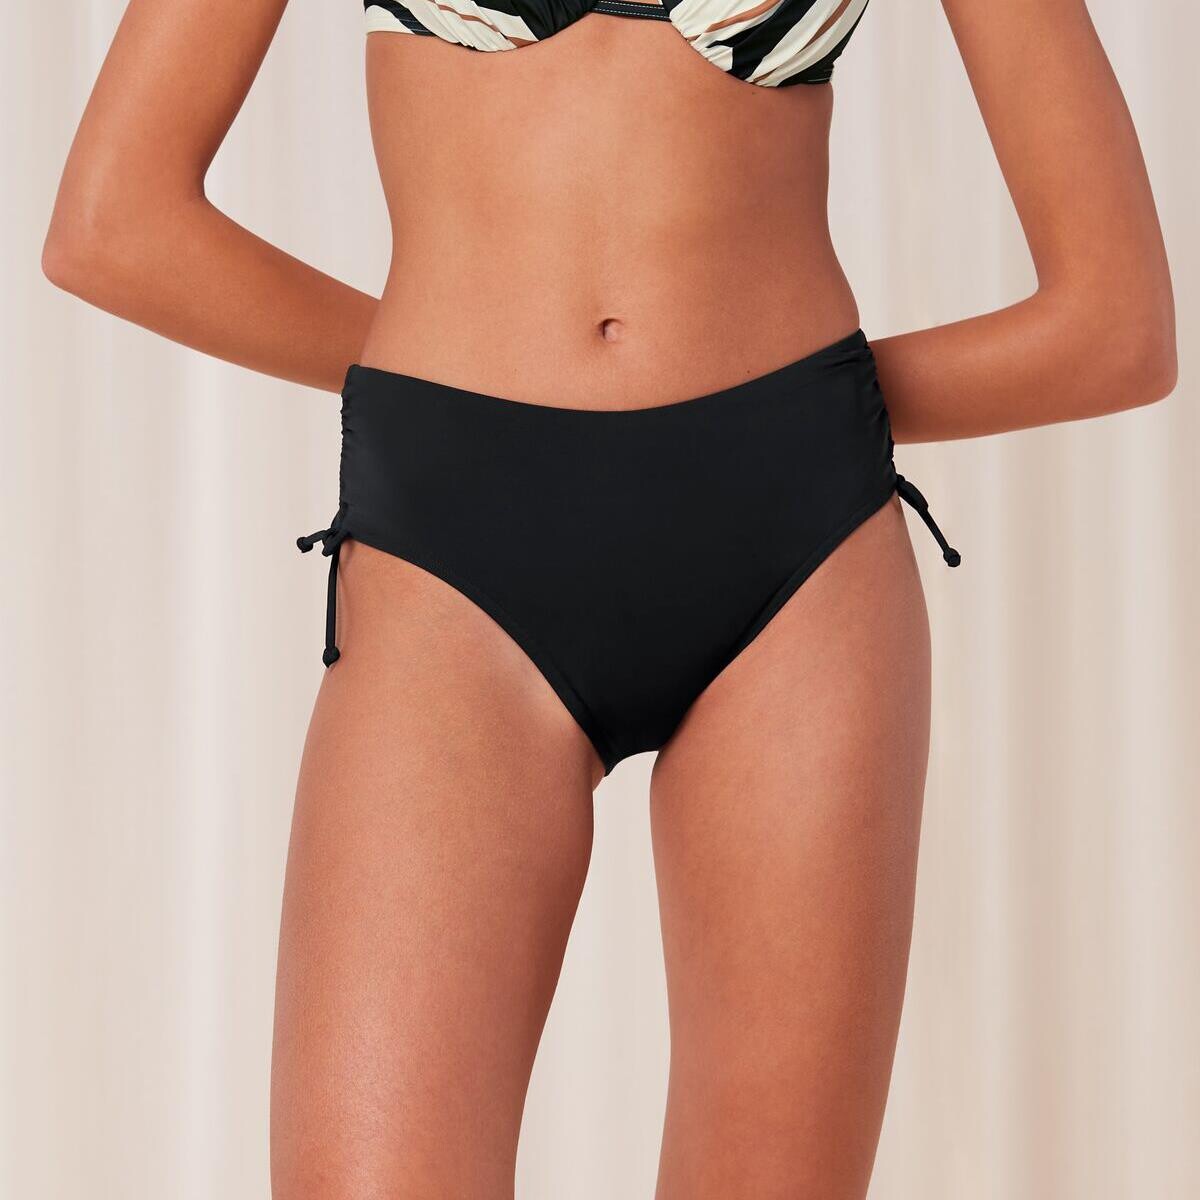 Billede af Triumph Summer Rød Bikini Trusse, Farve: Sort, Størrelse: 38, Dame